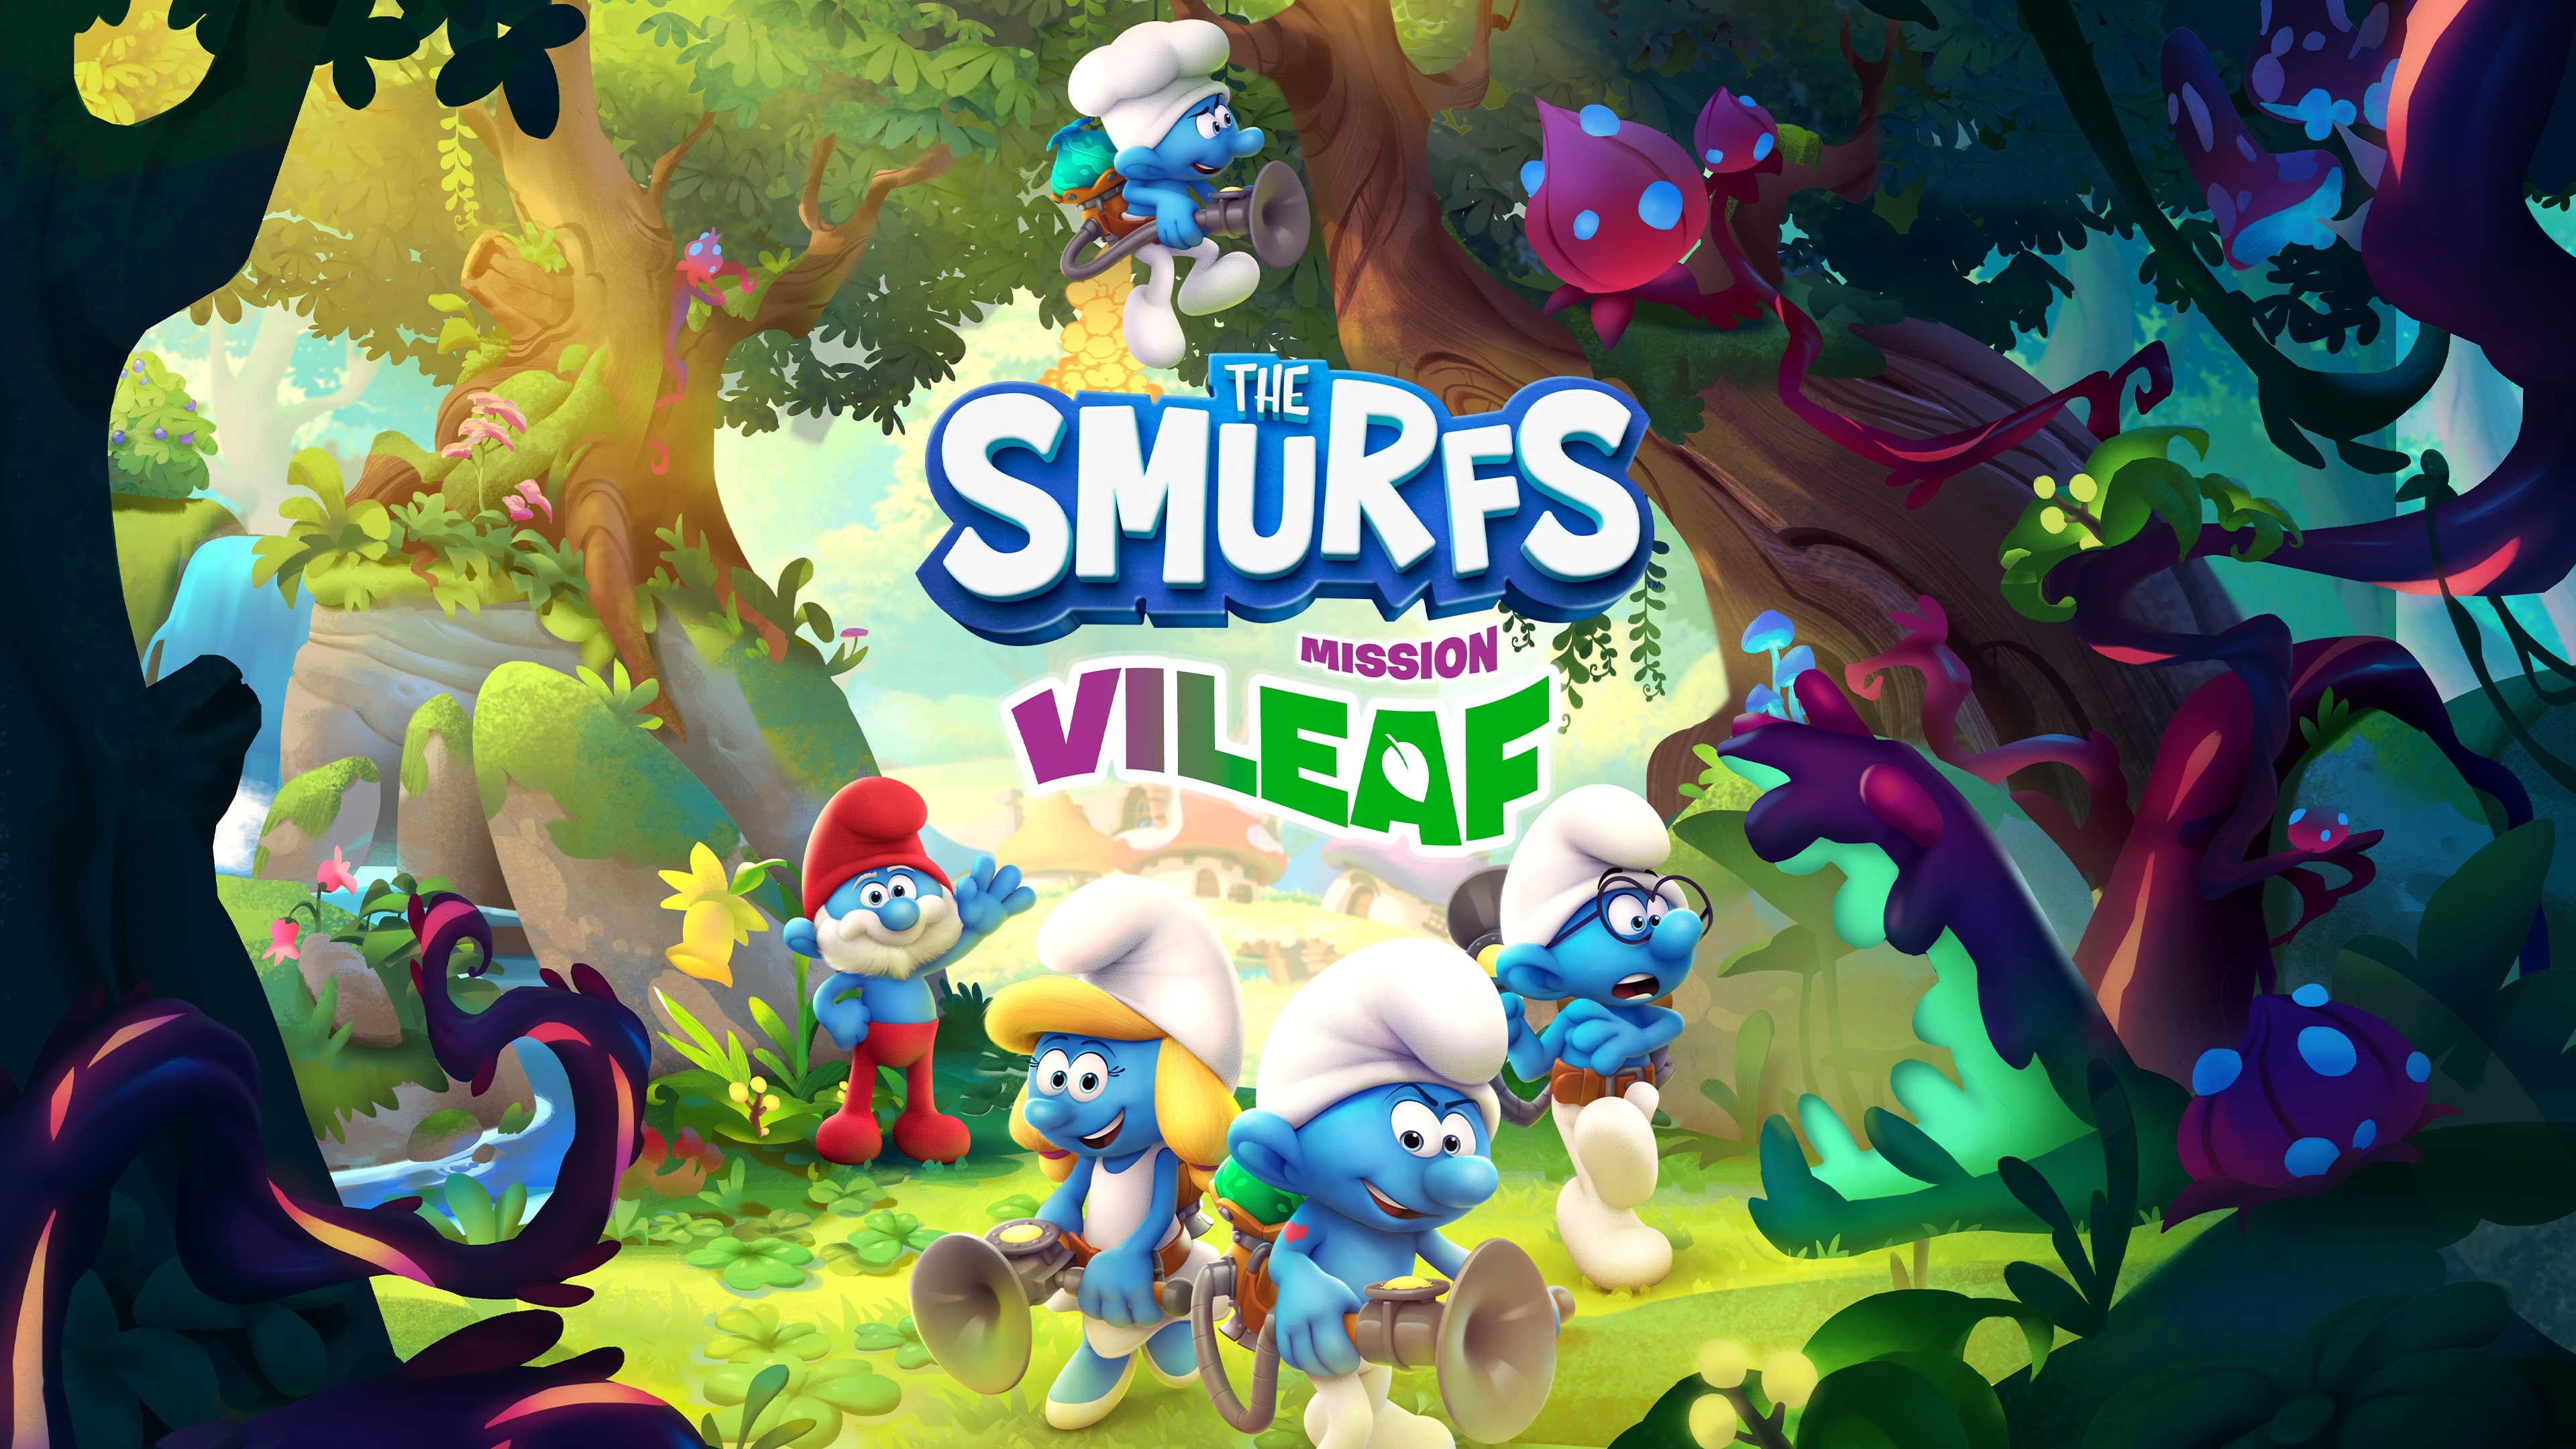 The Smurfs - Mission Vileaf